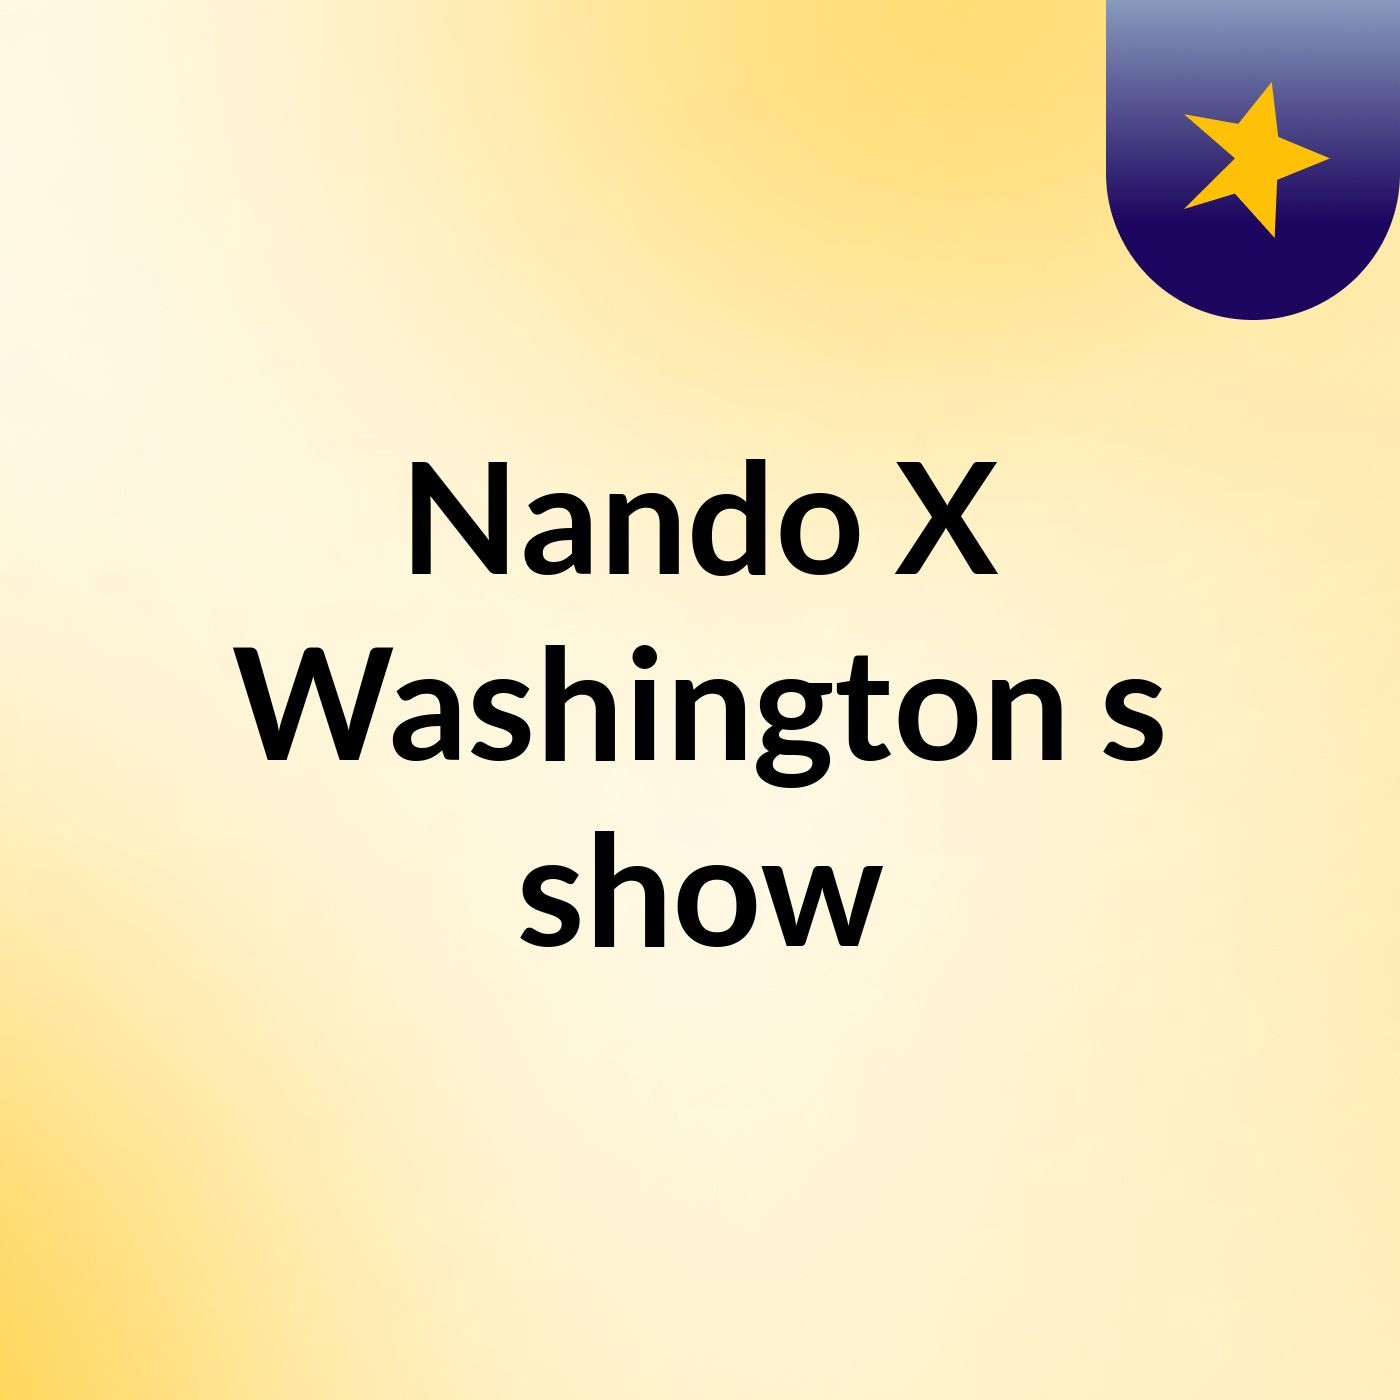 Nando X Washington's show